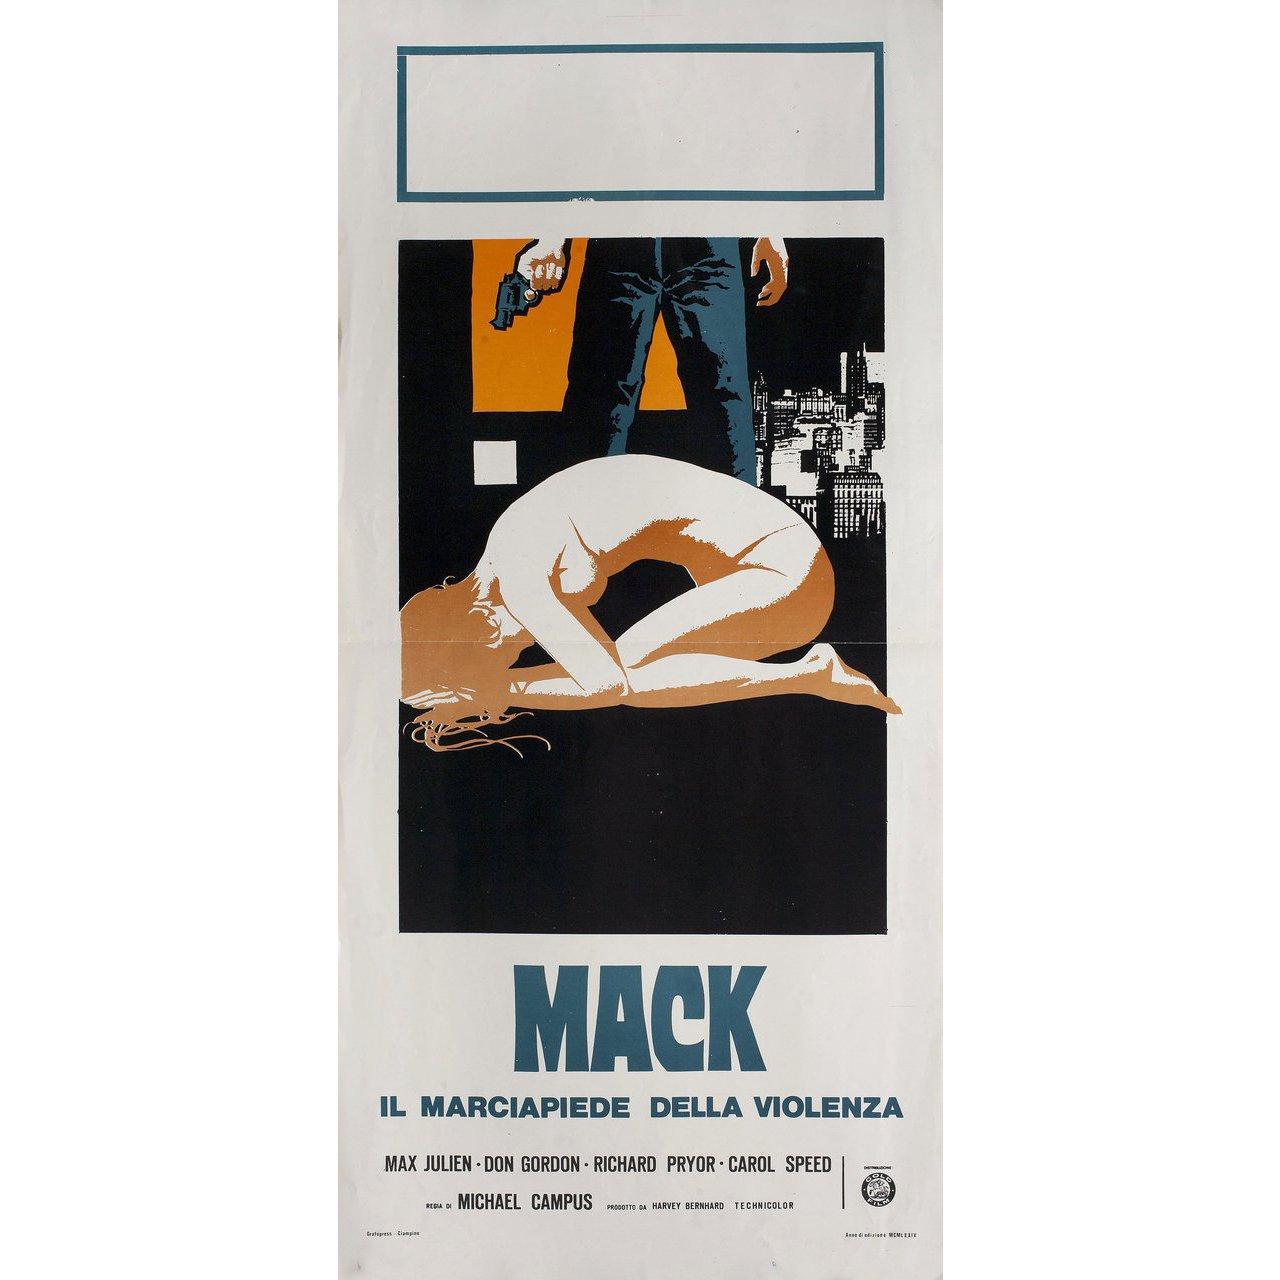 Affiche locandina italienne originale de 1974 pour le film The Mack réalisé par Michael Campus avec Max Julien / Don Gordon / Richard Pryor / Carol Speed. Très bon état, plié. De nombreuses affiches originales ont été publiées pliées ou ont été